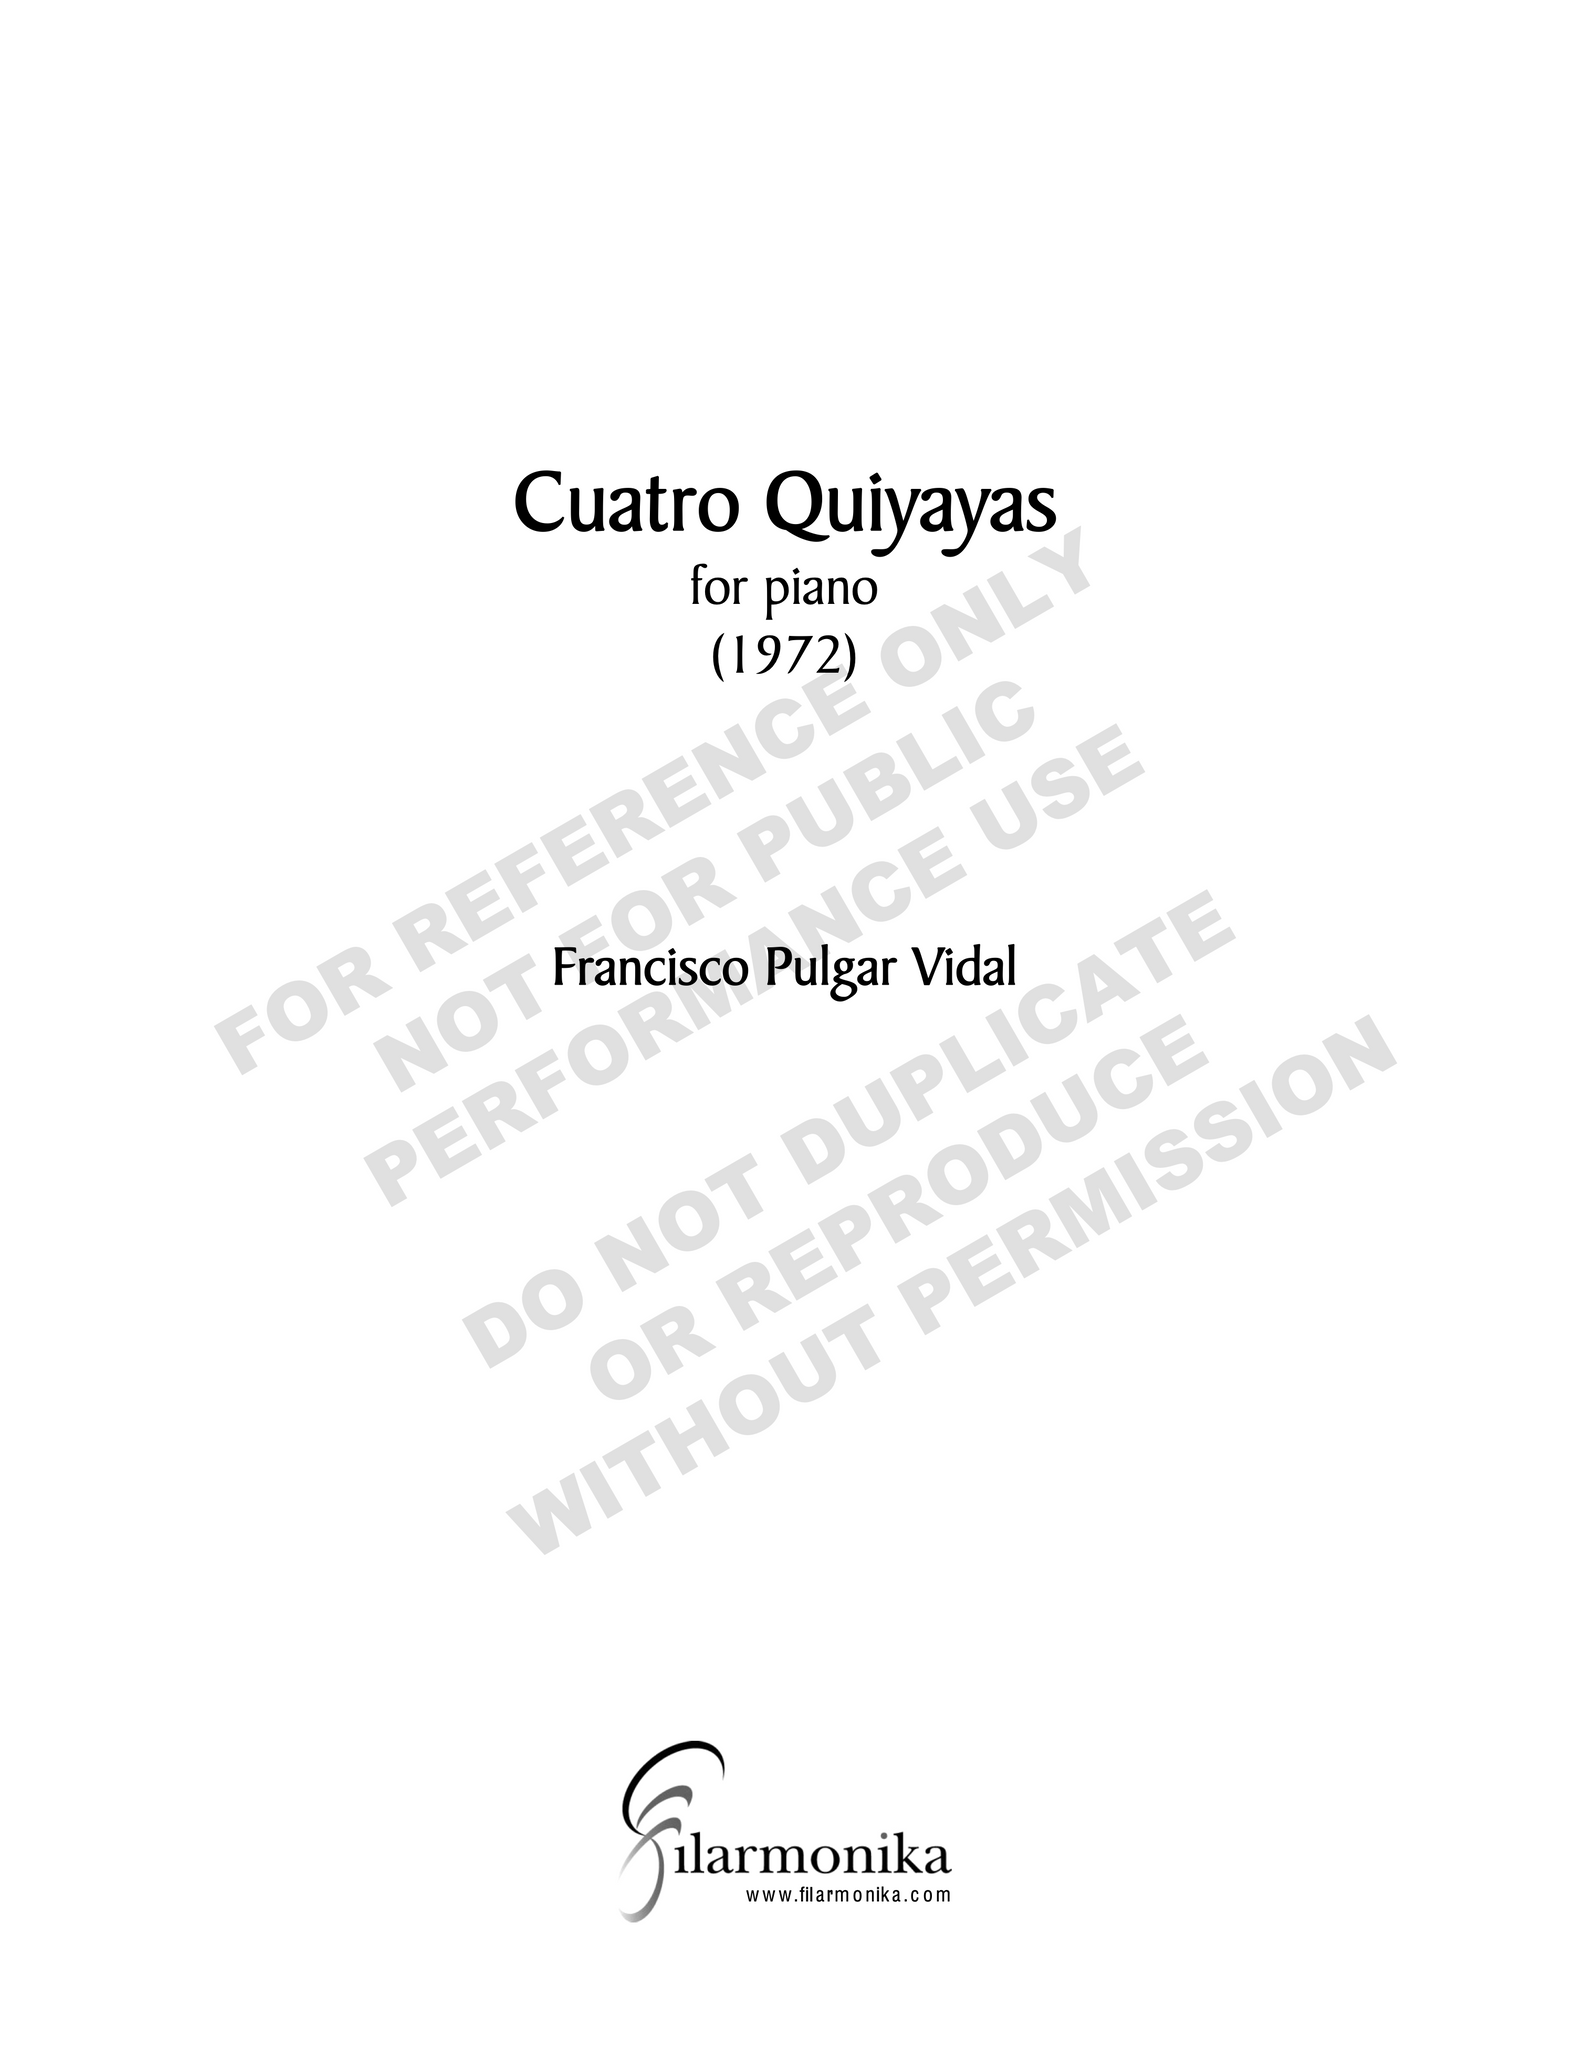 Cuatro quiyayas, for solo piano